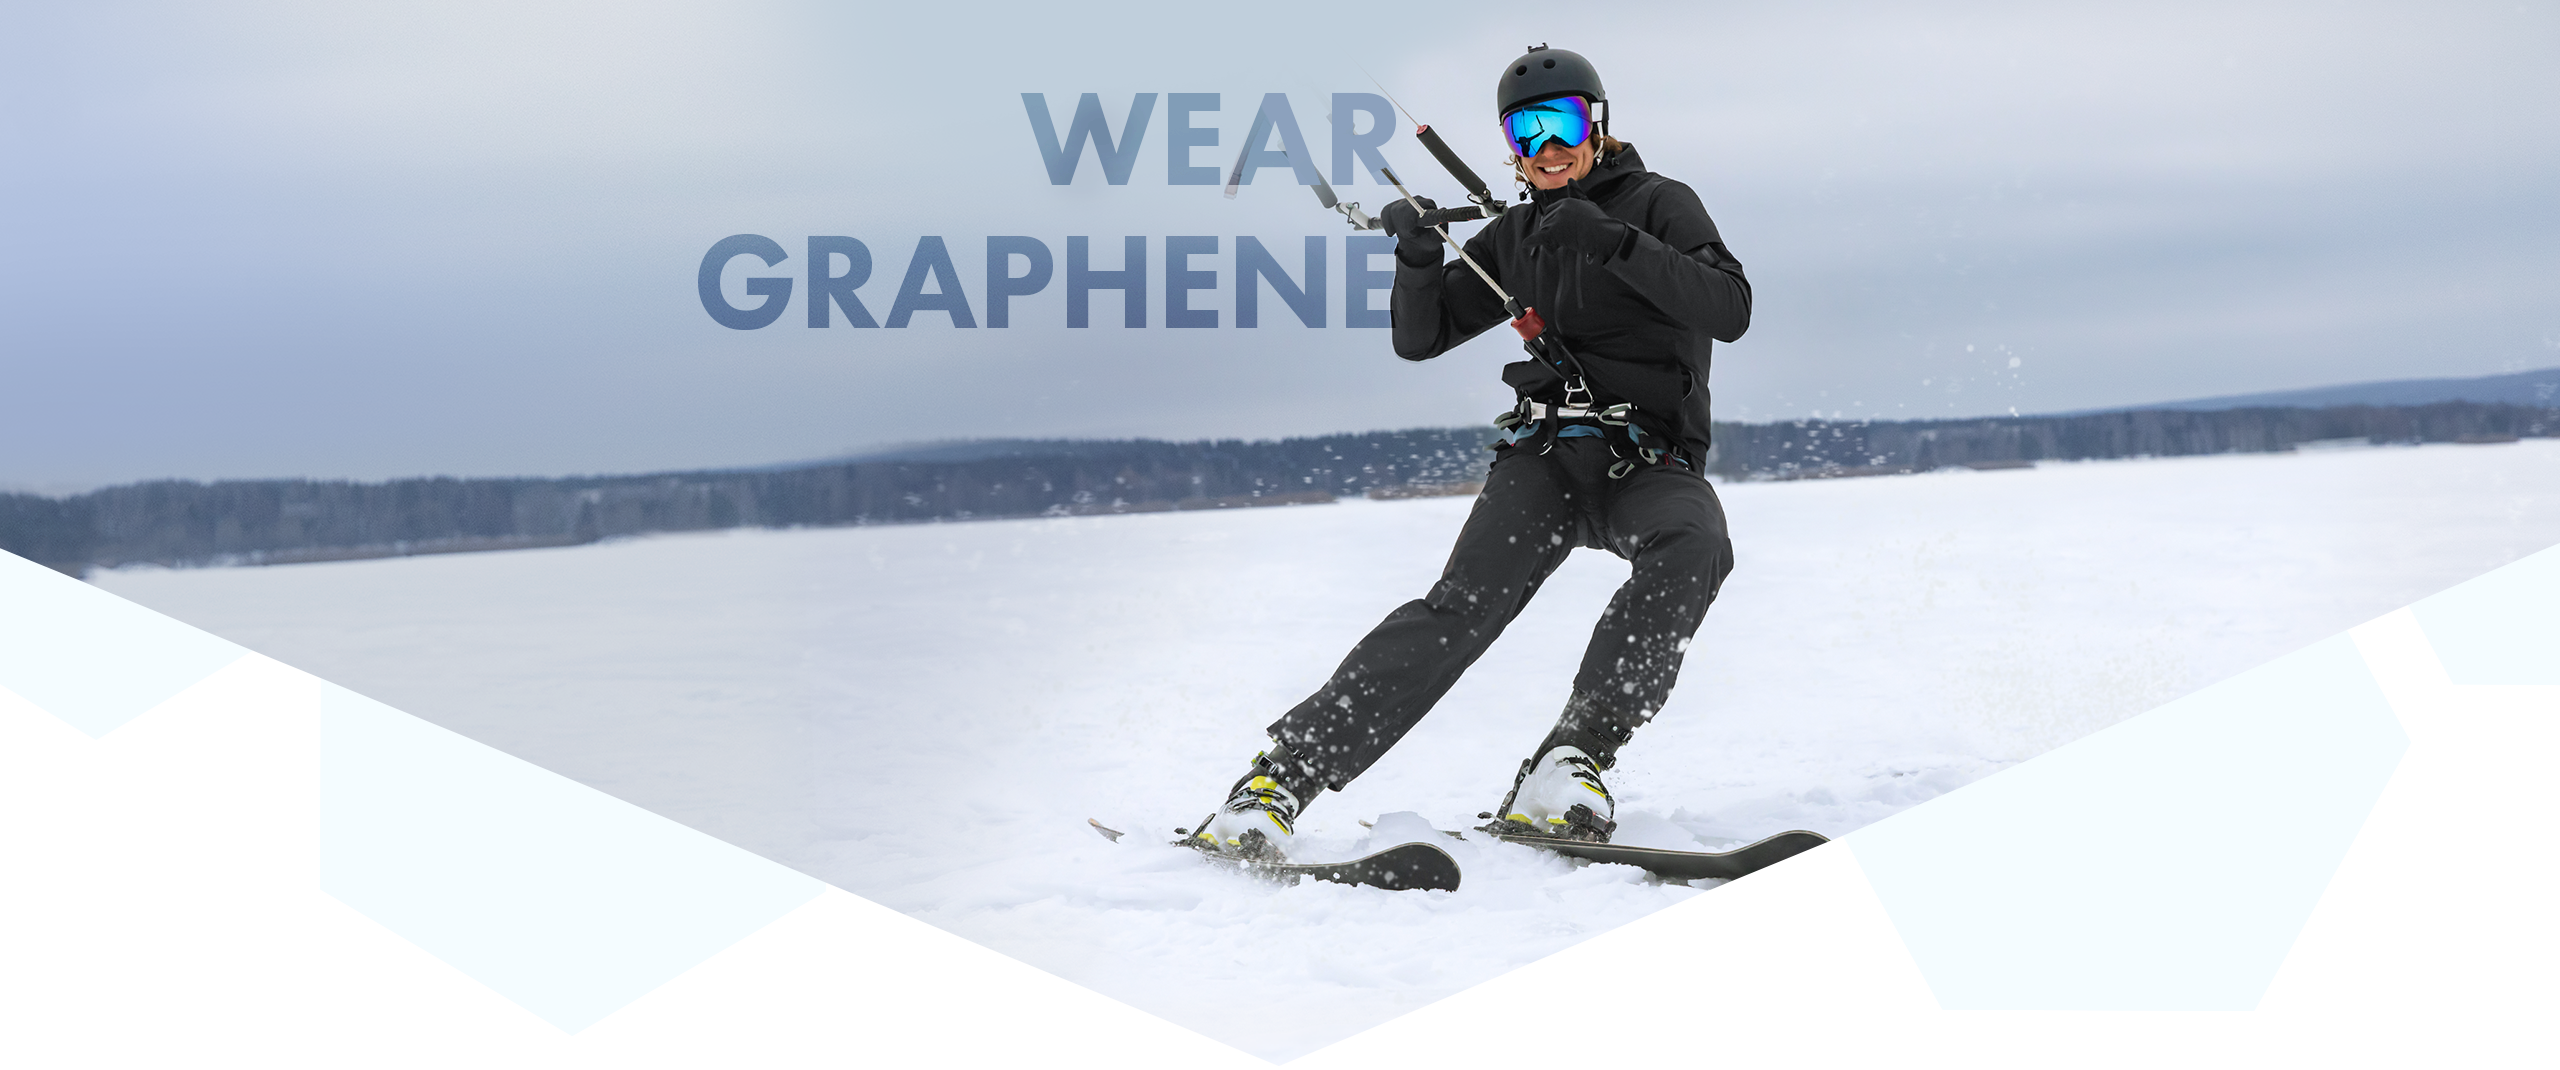 Wear graphene